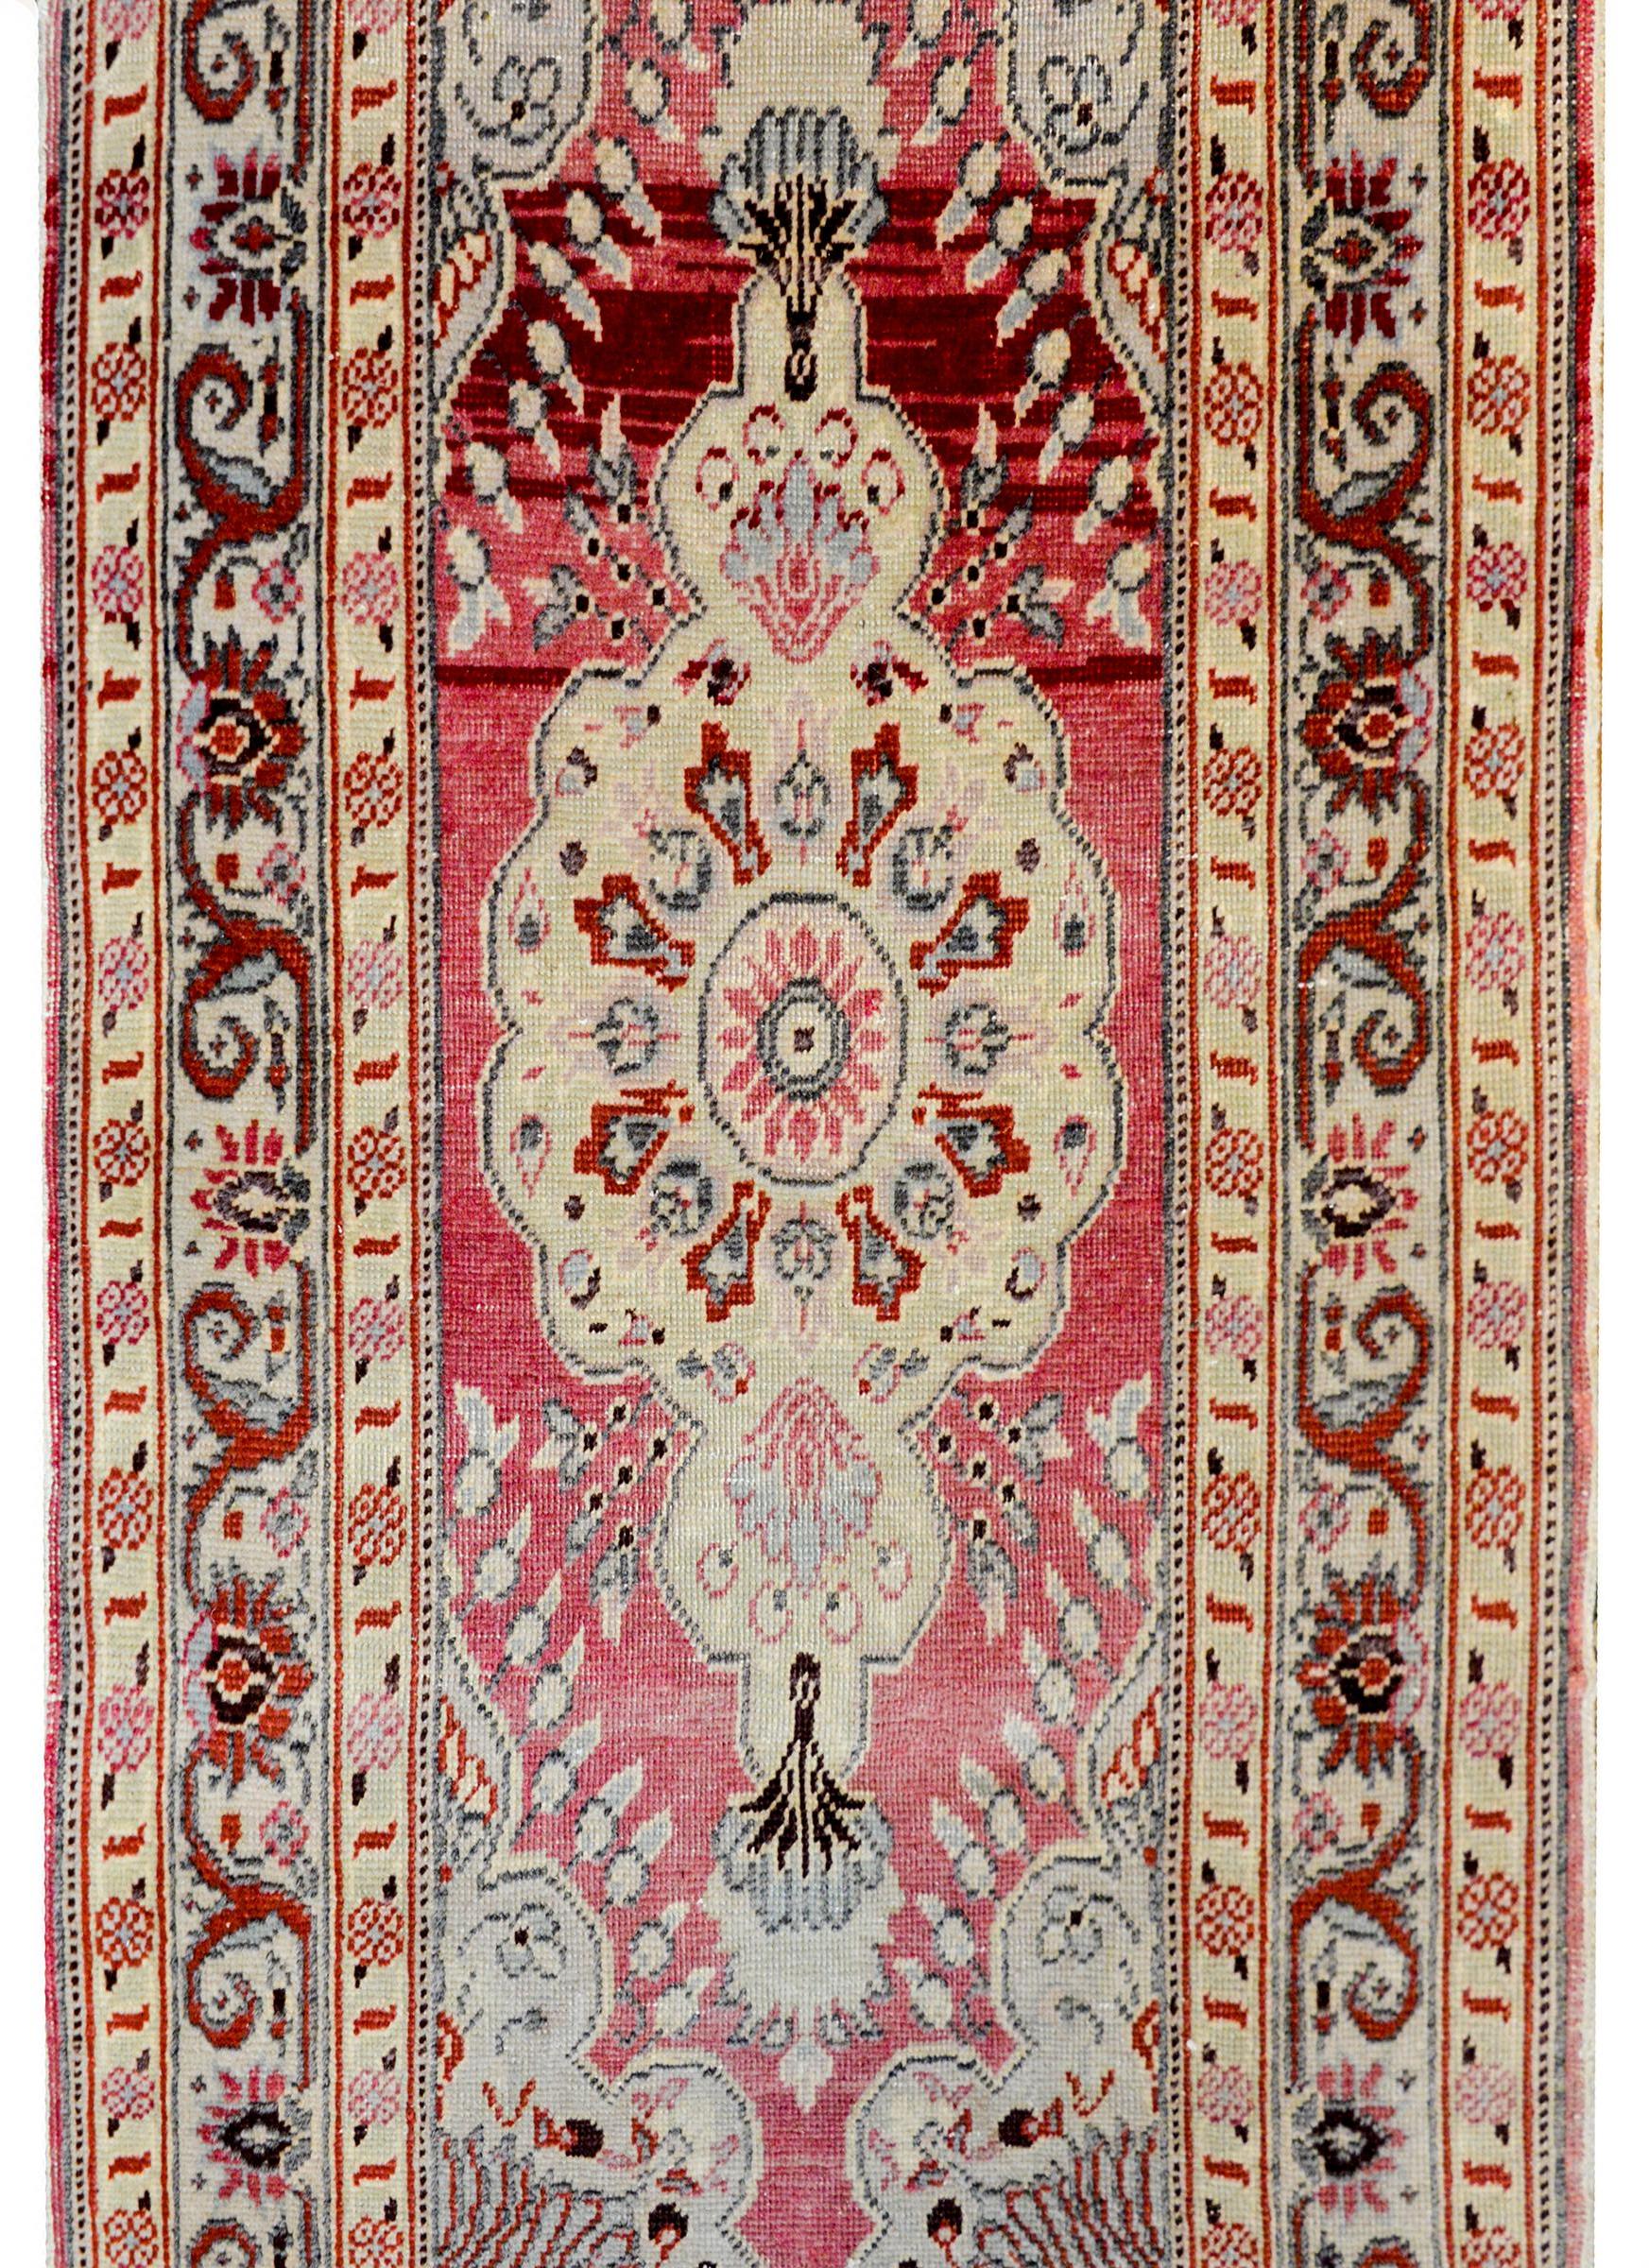 Ein schöner Teppich aus dem frühen 20. Jahrhundert von Persists Tabriz mit einem großen zentralen Rautenmedaillon auf einem kühnen Hintergrund in Preiselbeere, umgeben von einer komplexen Bordüre mit einem Blumen- und Rankenmuster, flankiert von